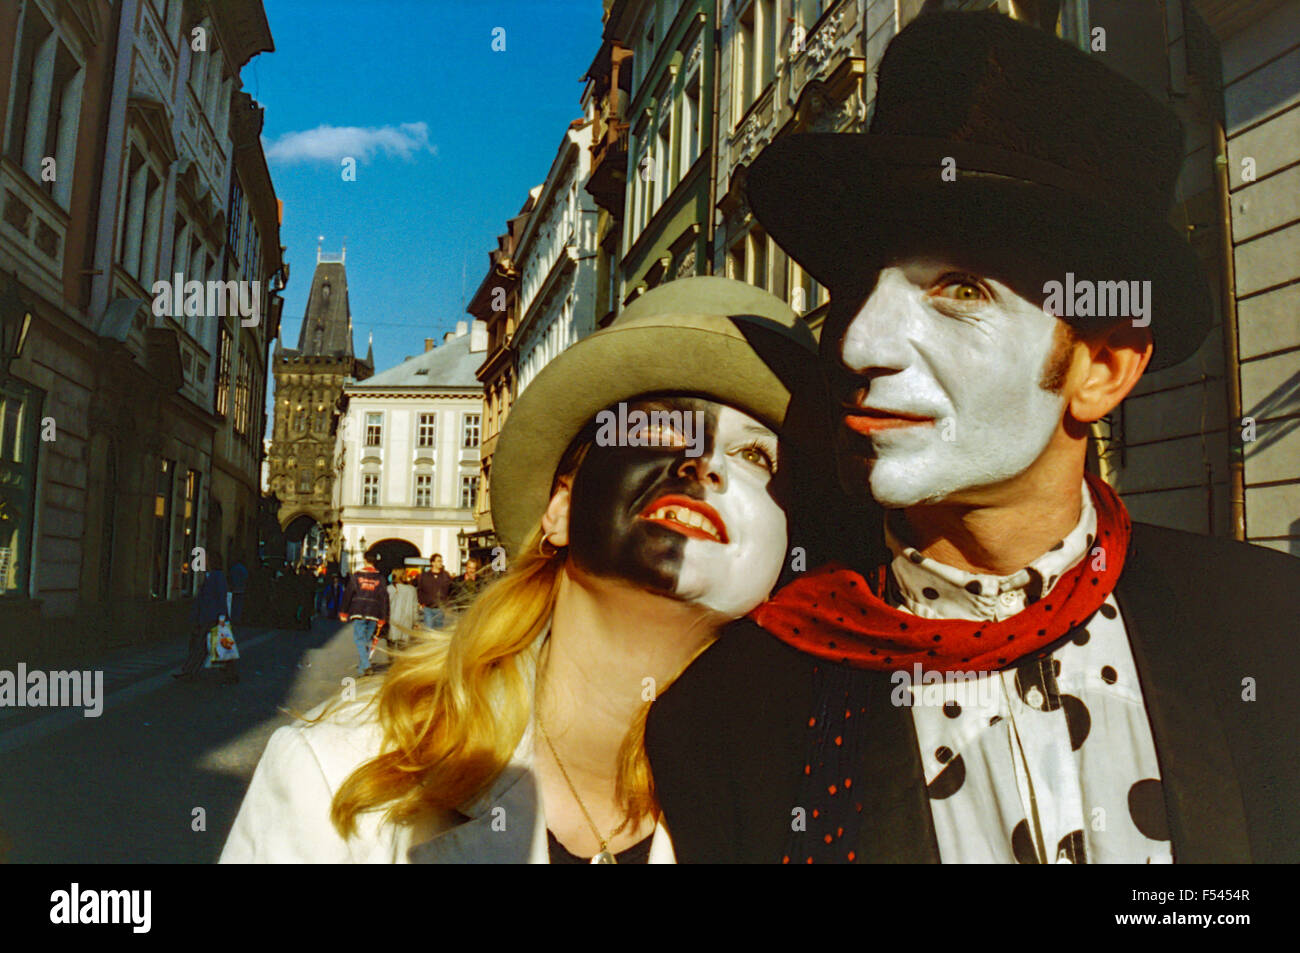 Prague interprète Une paire de masques mimes, Pierrot dans le centre de Prague, couple dans la rue Celetna près de la place de la Vieille ville, Prague, Europe Banque D'Images